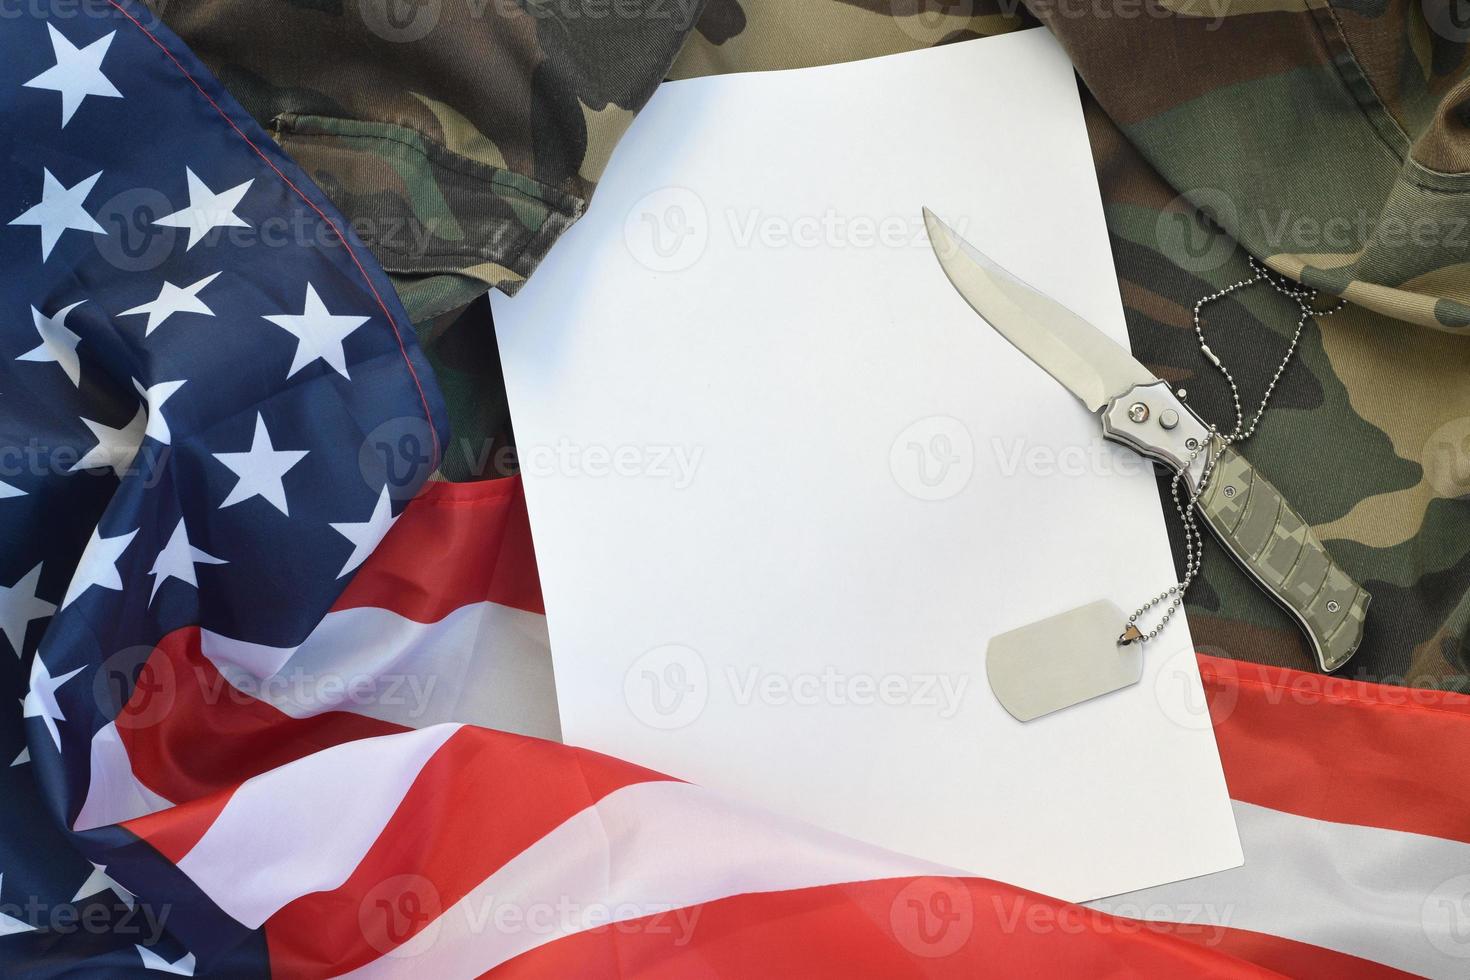 el papel en blanco se encuentra con un cuchillo y un collar de etiqueta de perro del ejército en uniforme de camuflaje y bandera estadounidense foto